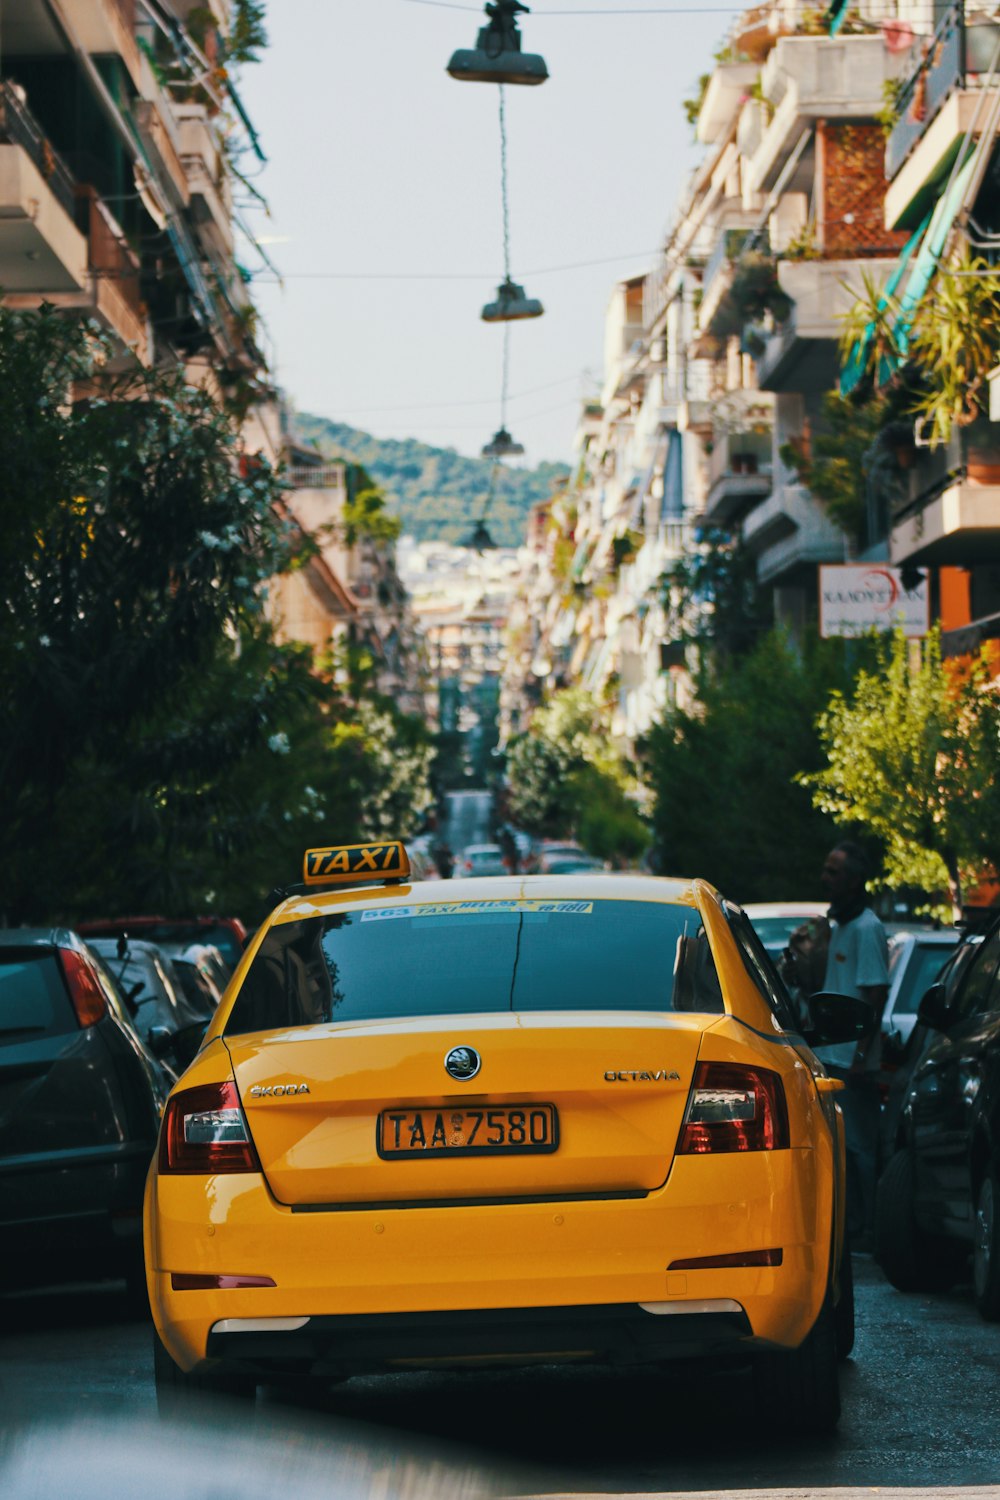 Un taxi jaune descendant une rue à côté de grands immeubles